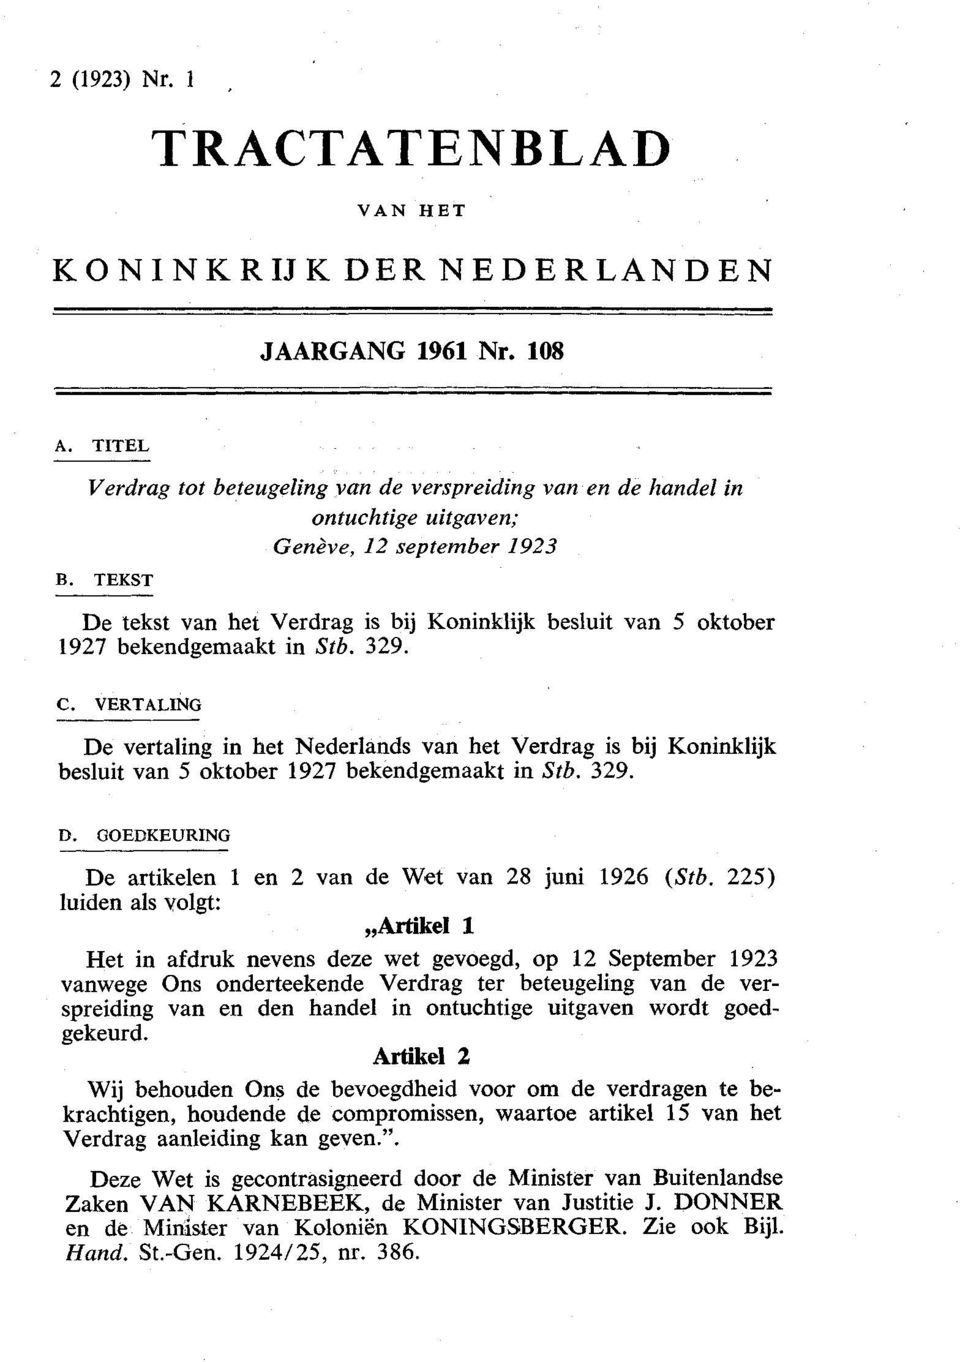 TEKST De tekst van het Verdrag is bij Koninklijk besluit van 5 oktober 1927 bekendgemaakt in Stb. 329. C.